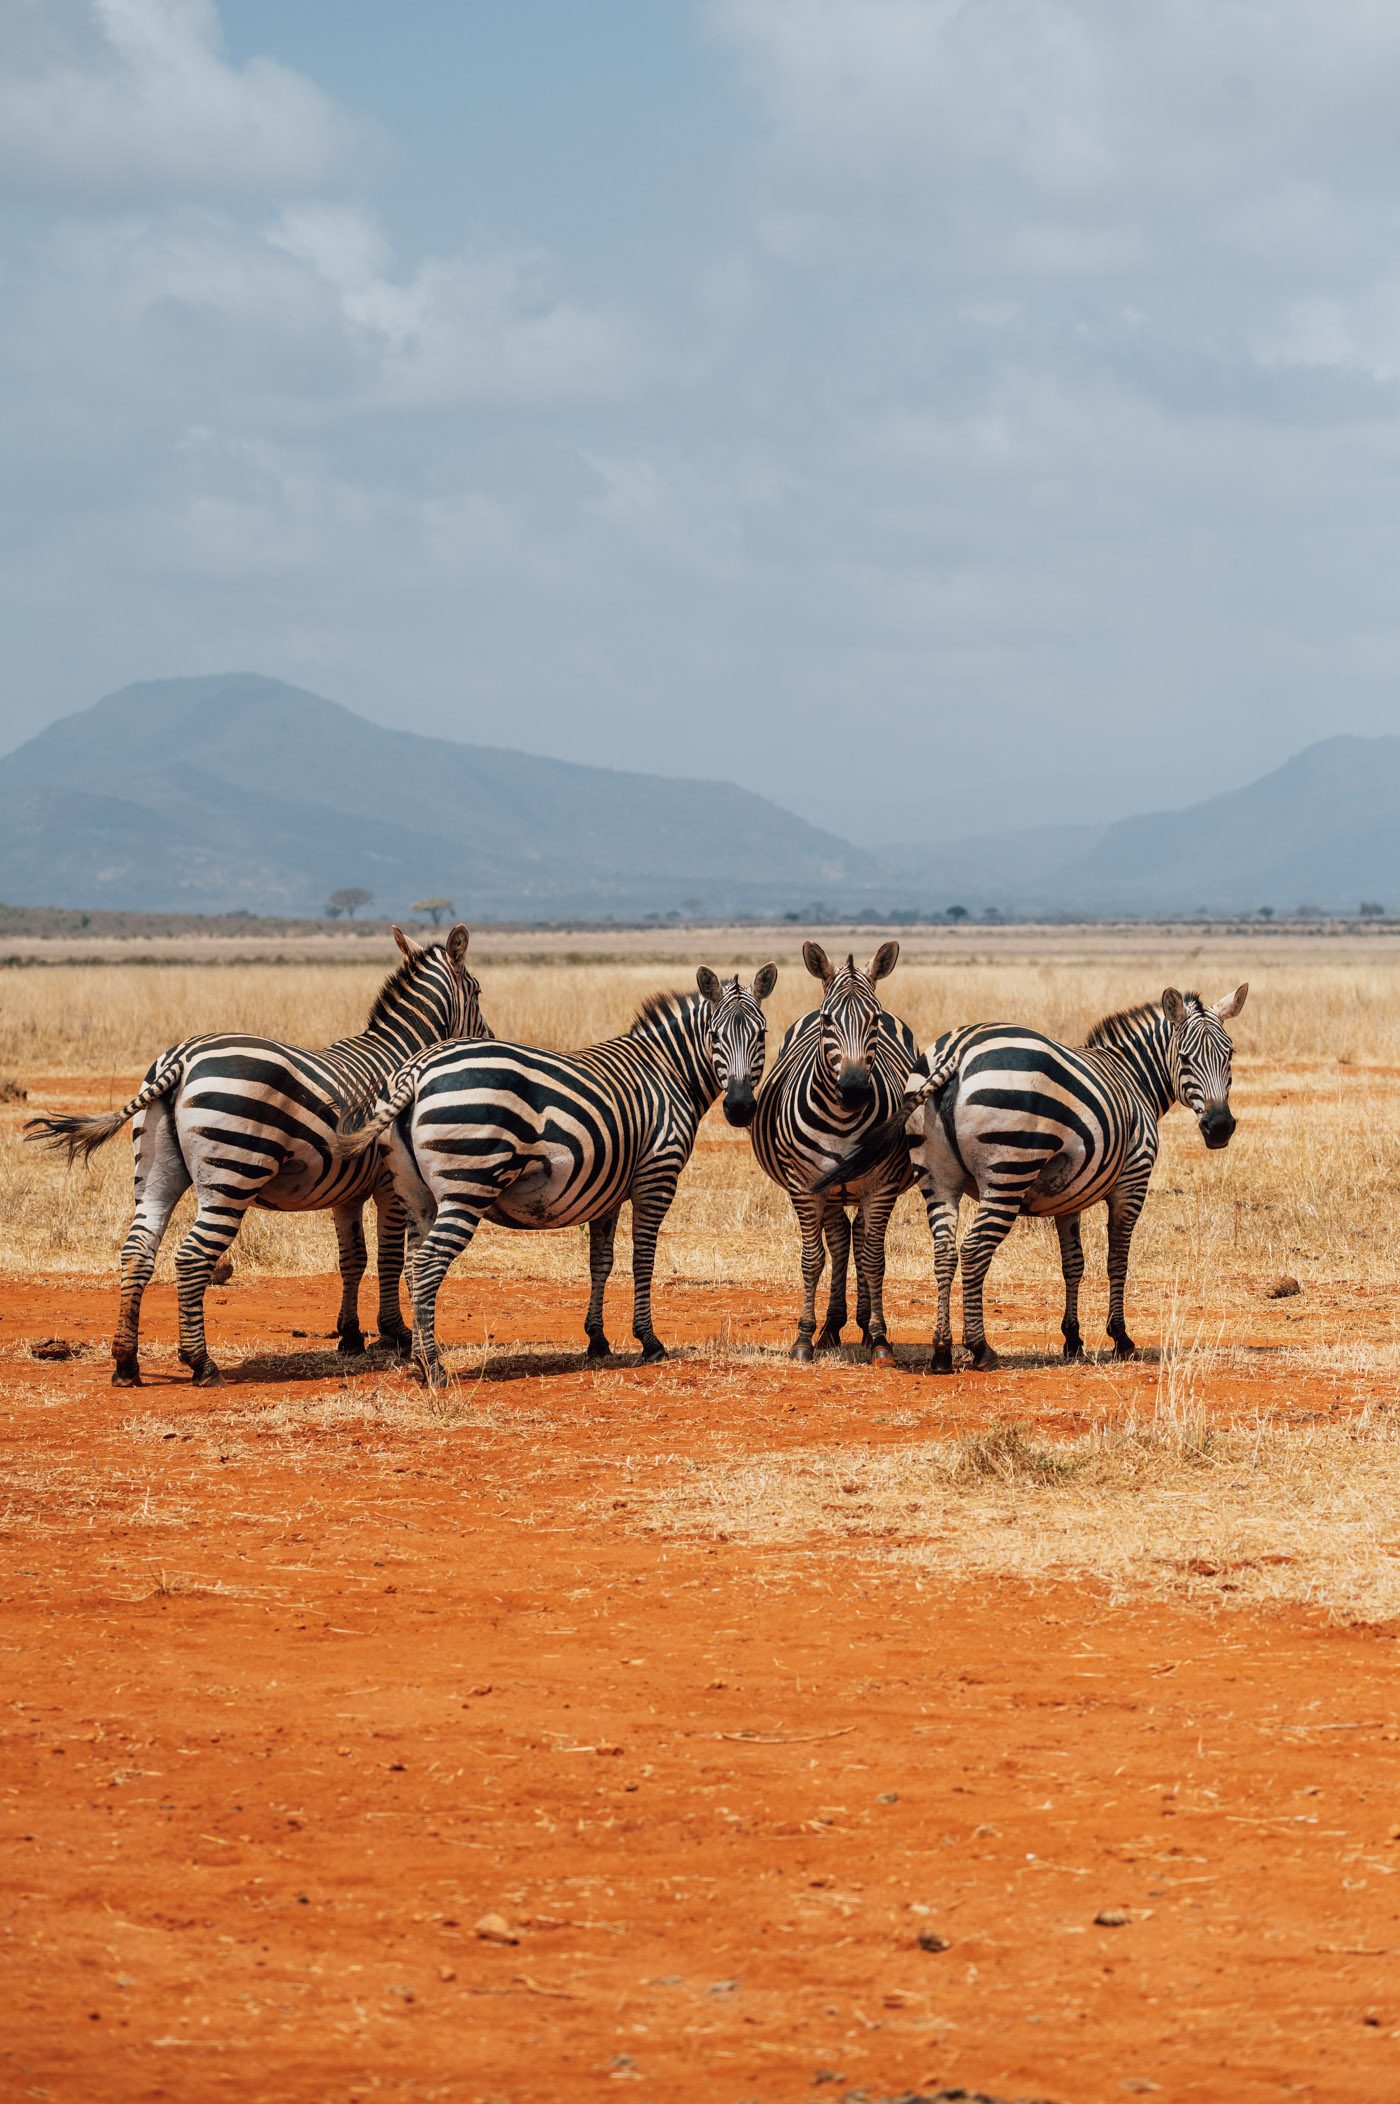 Zebras in Tsavo East National Park in Kenya